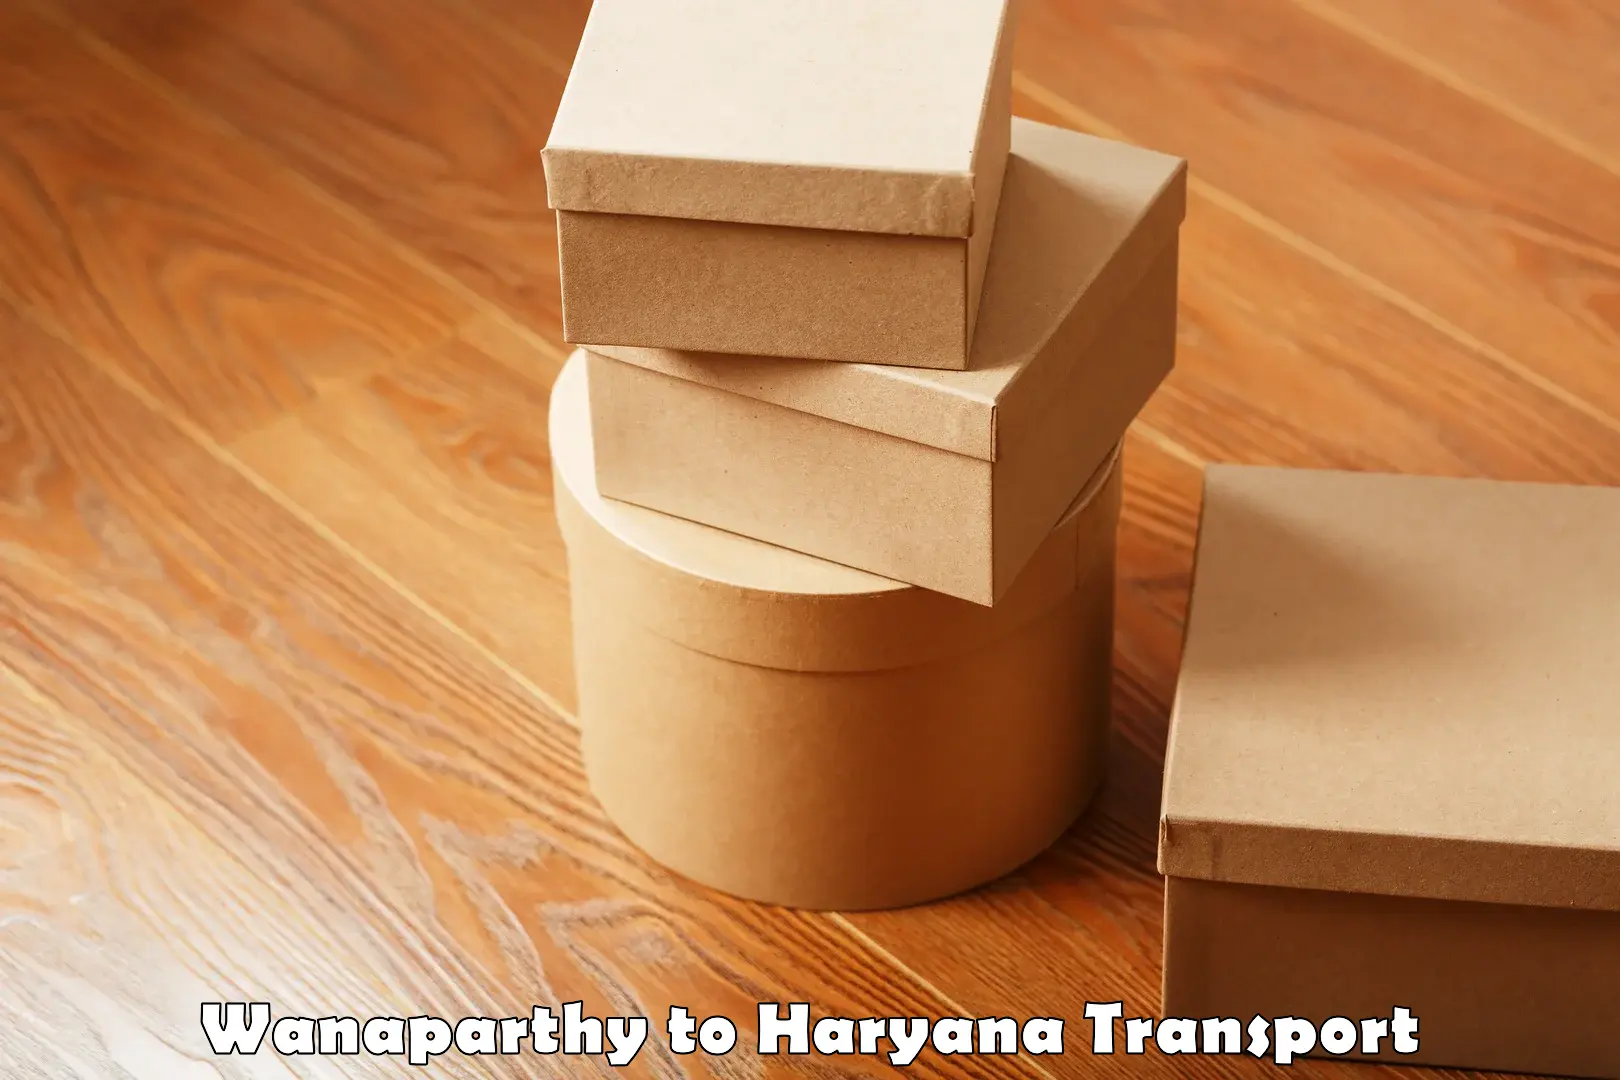 Shipping partner Wanaparthy to Haryana